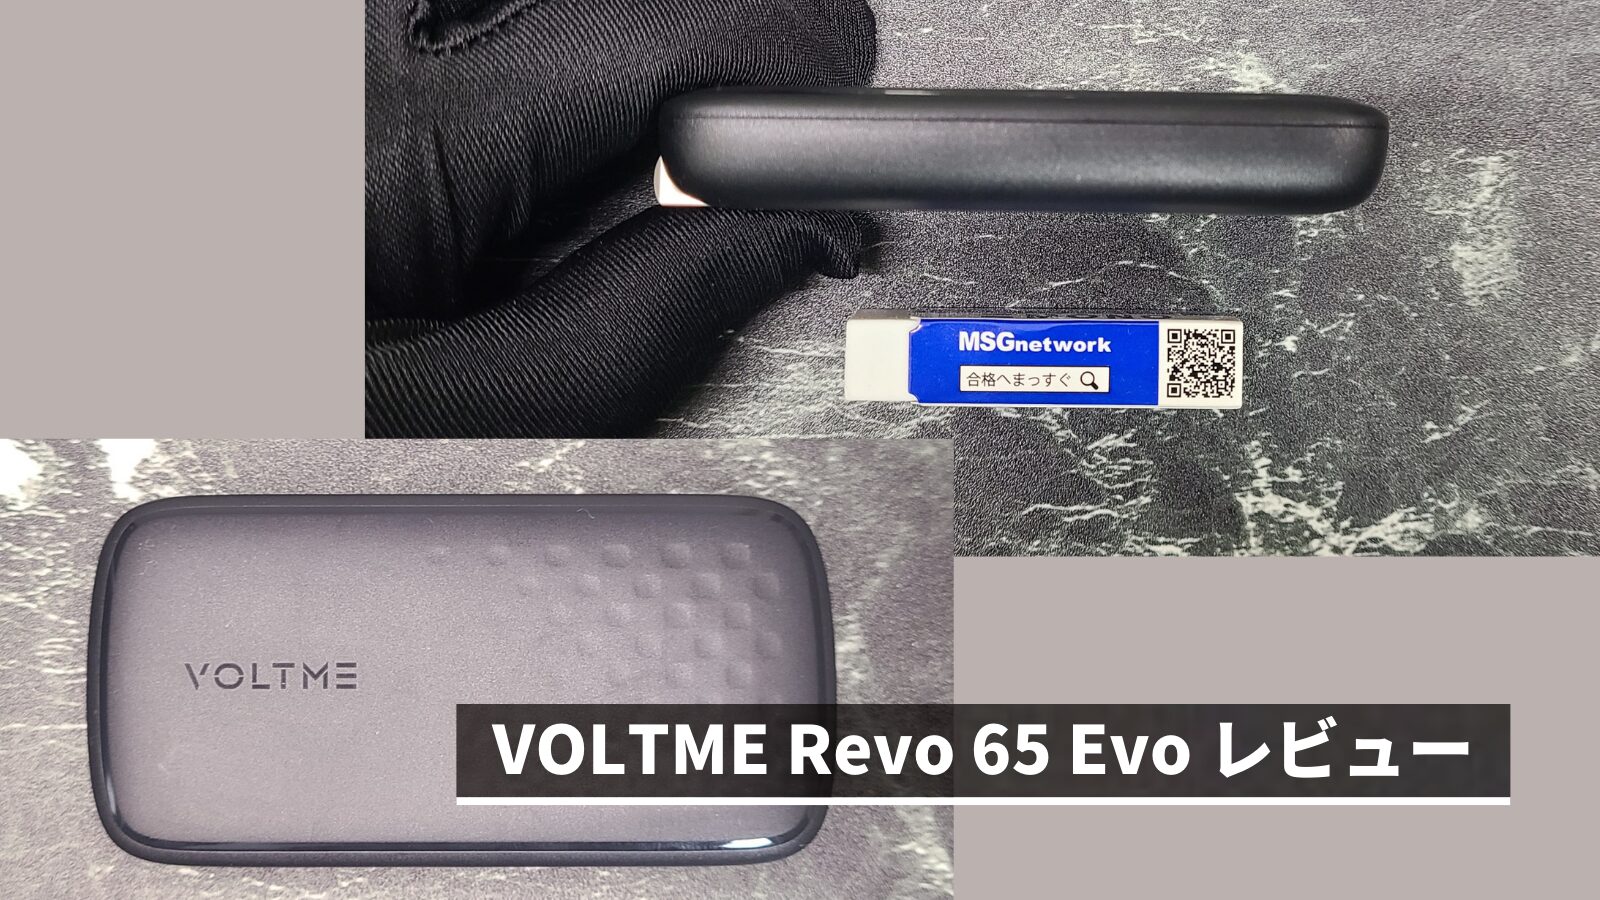 VOLTME Revo 65 Evo レビュー | 65W出力出来るコンパクトな折畳式薄型充電器